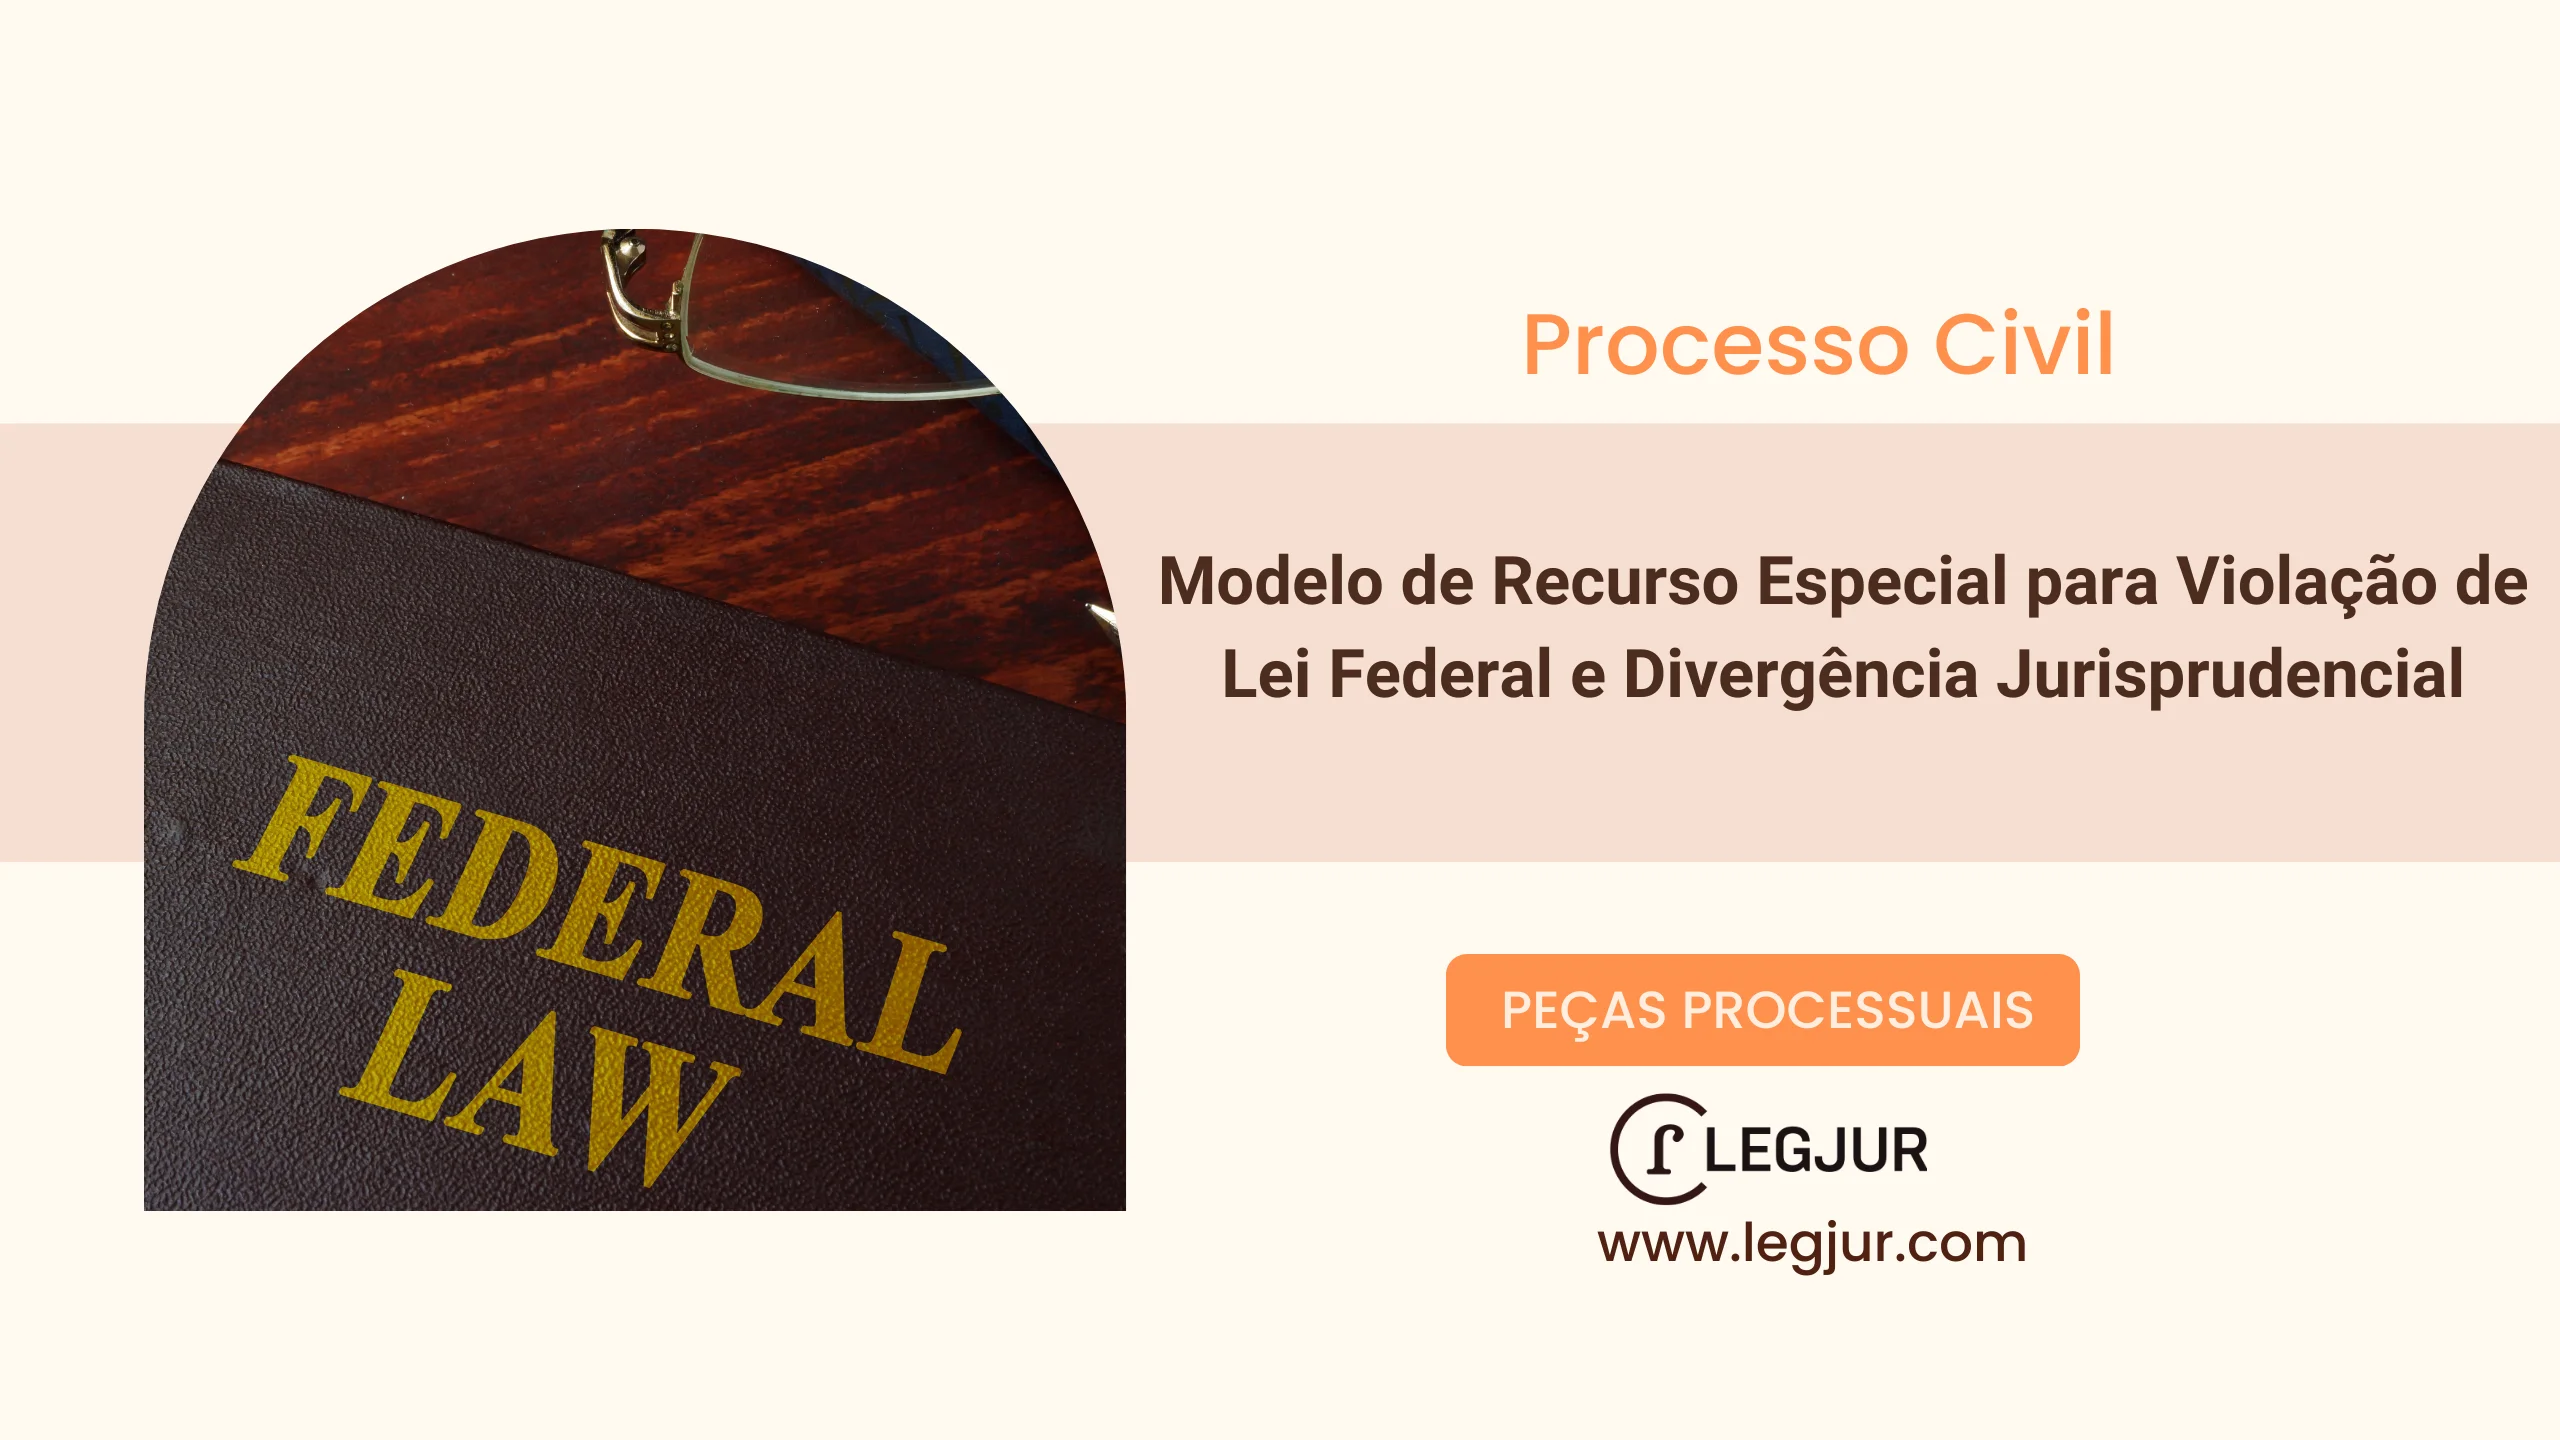 Modelo de Recurso Especial para Violação de Lei Federal e Divergência Jurisprudencial